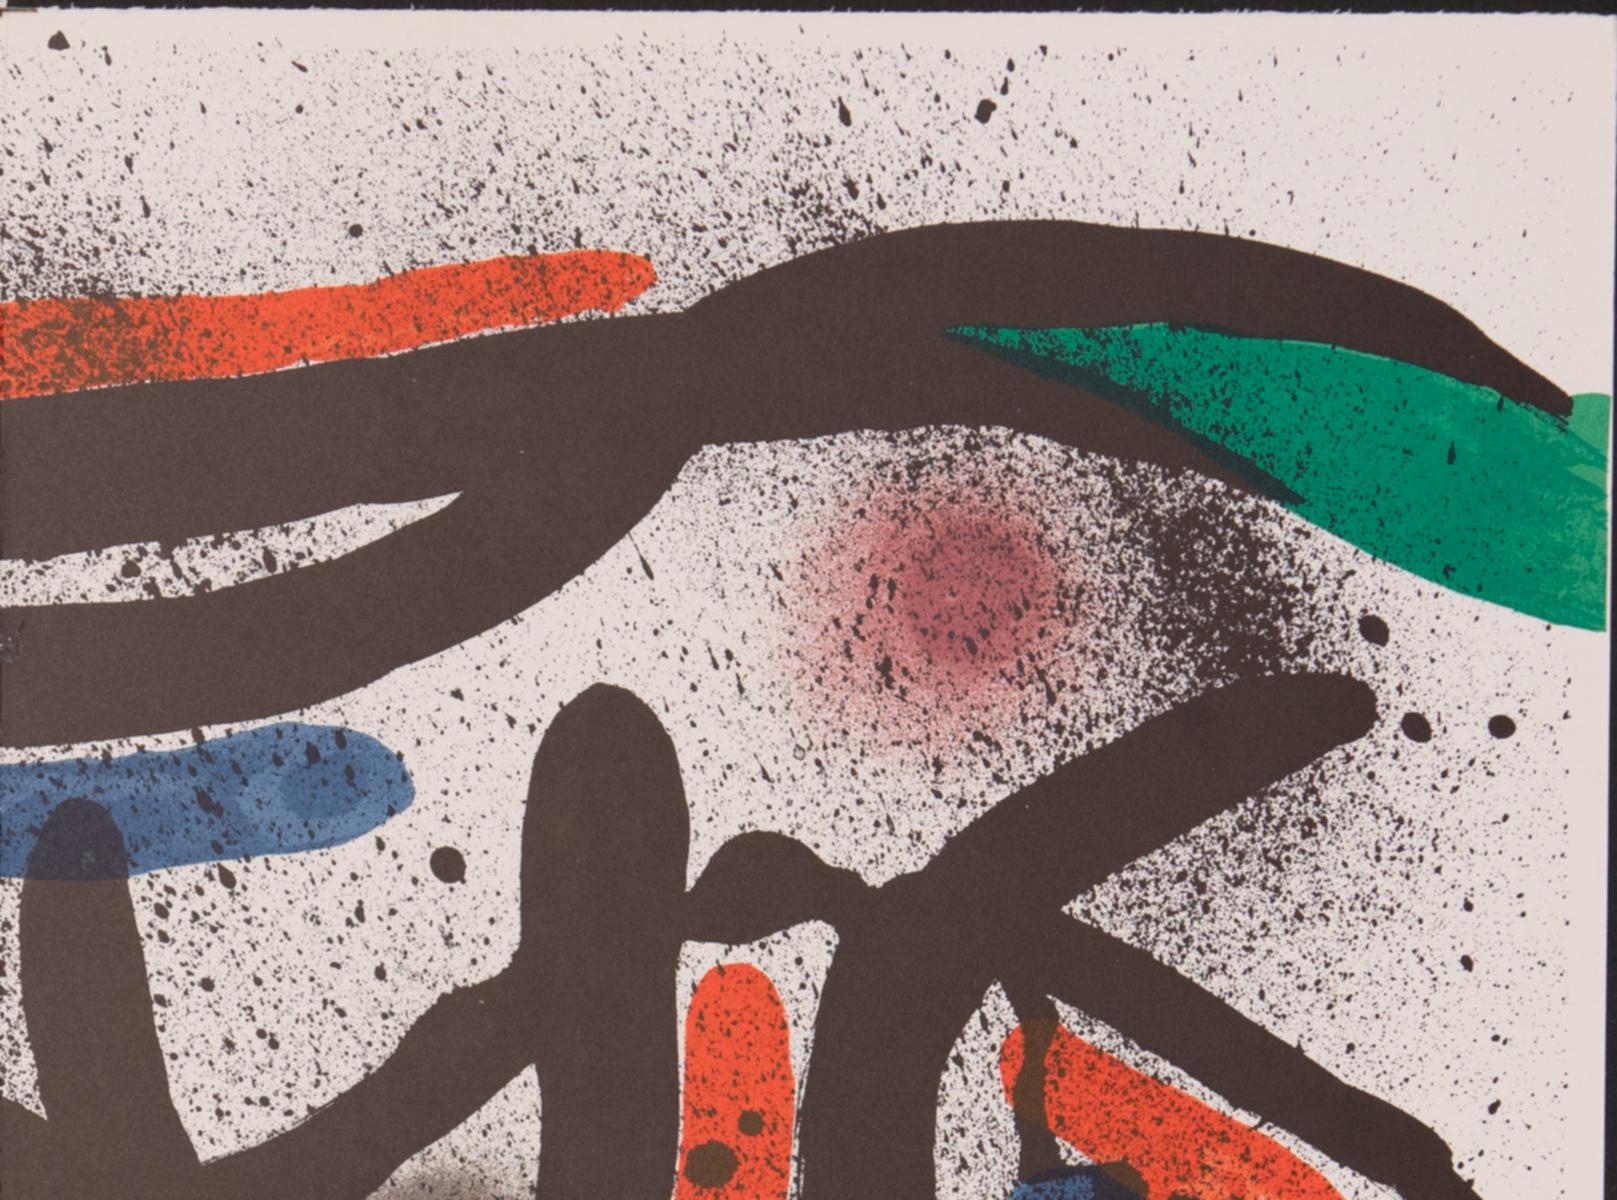 Litografo (Band I) Italienische Ausgabe von 1972.

Katalog der Werke: Cramer 160.

Leichte Buchfalte in der Mitte des Papiers.

Mirós Entwicklung einer neuen Bildsprache führte zu einer konsequenten Beschränkung auf die Grundfarben Schwarz, Grün,